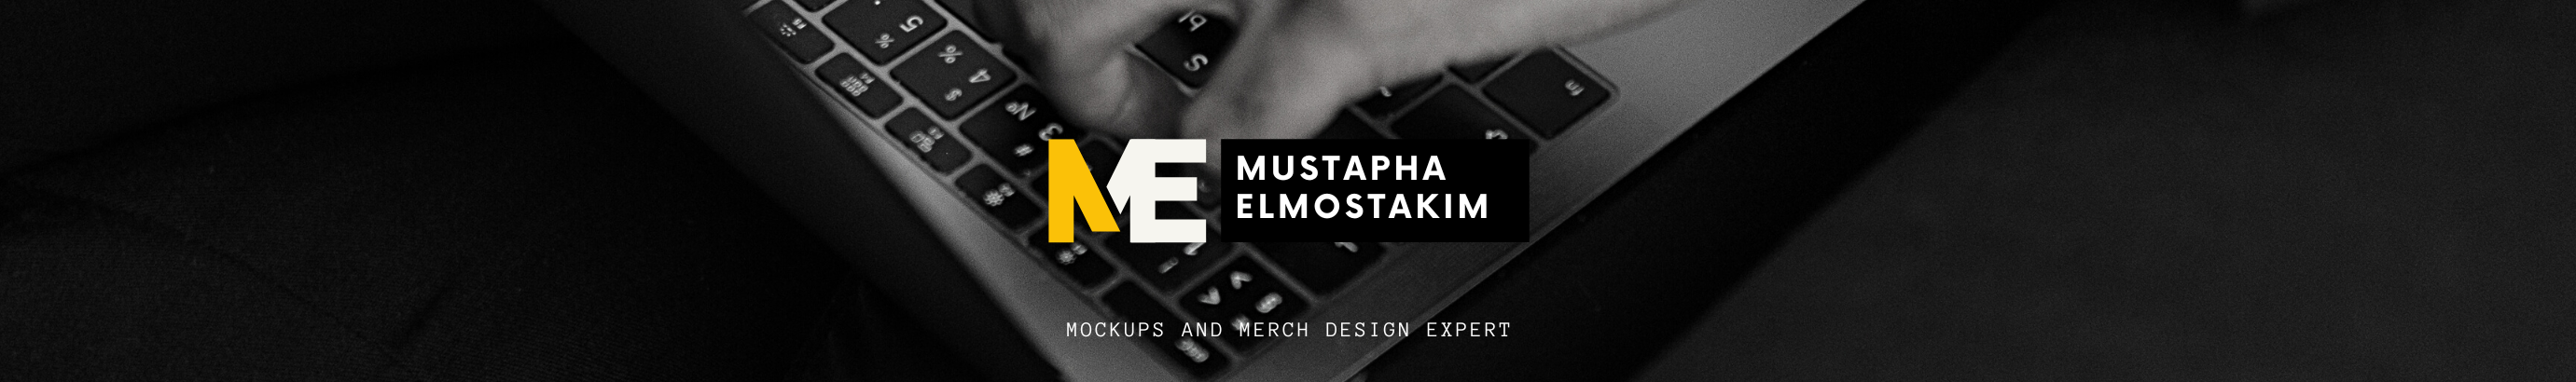 Banner de perfil de Mustapha Elmostakim